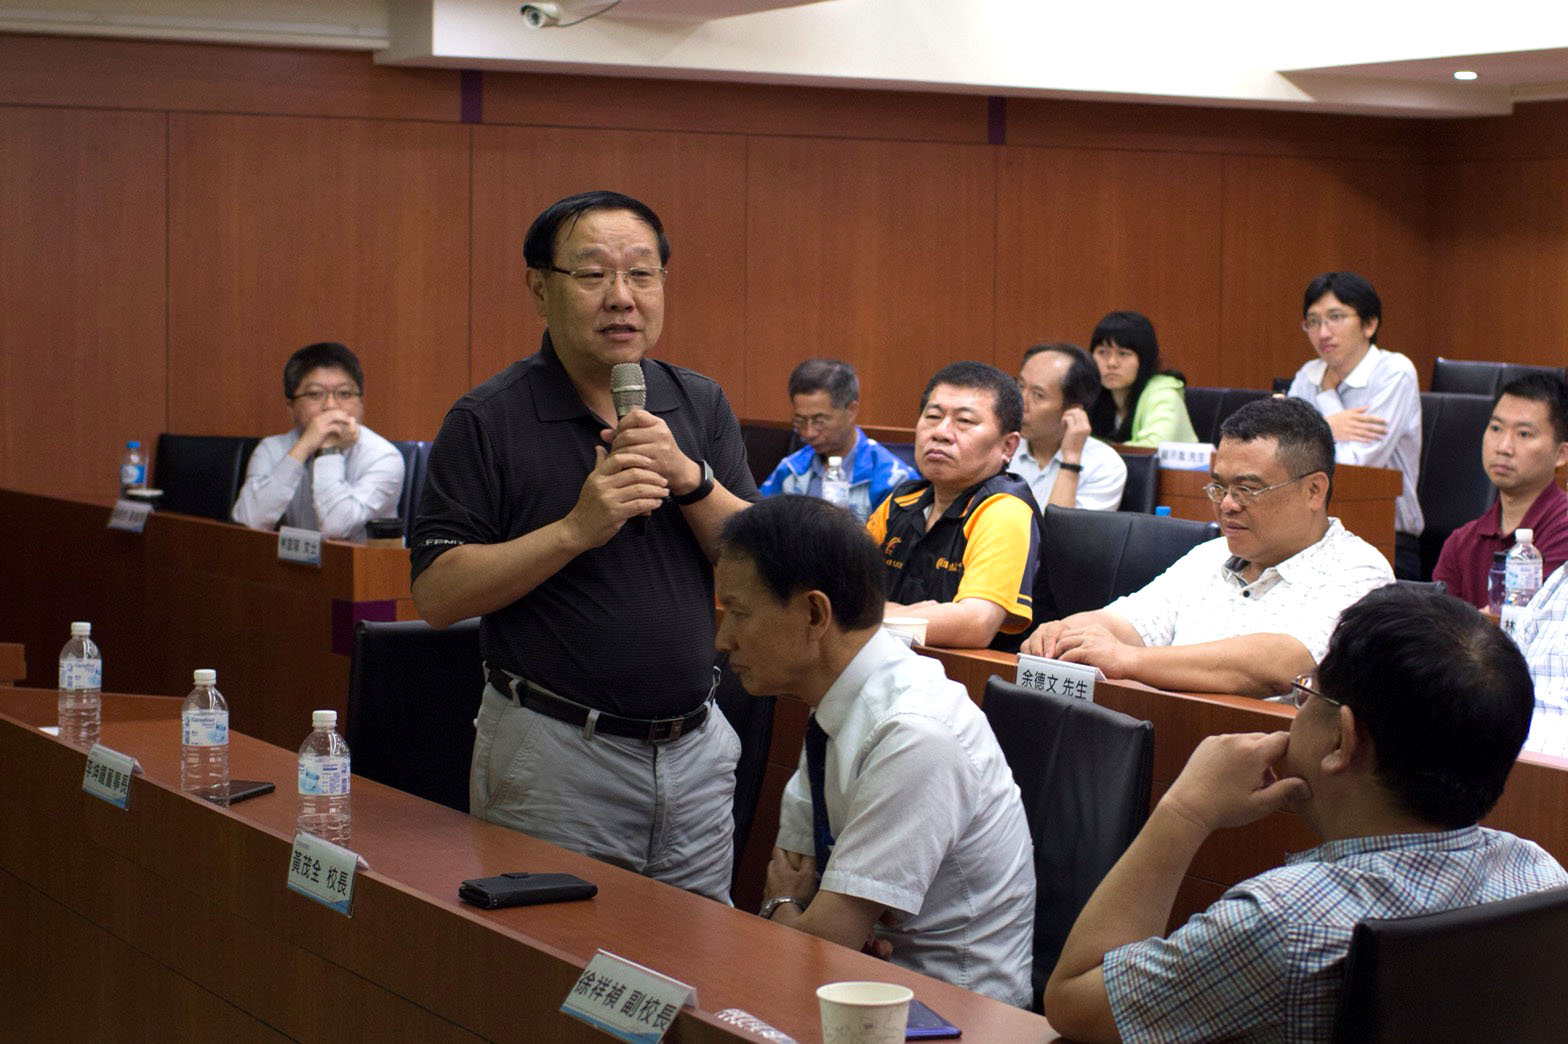 健格科技李坤鍾董事長分享其對台灣發展物聯網的看法